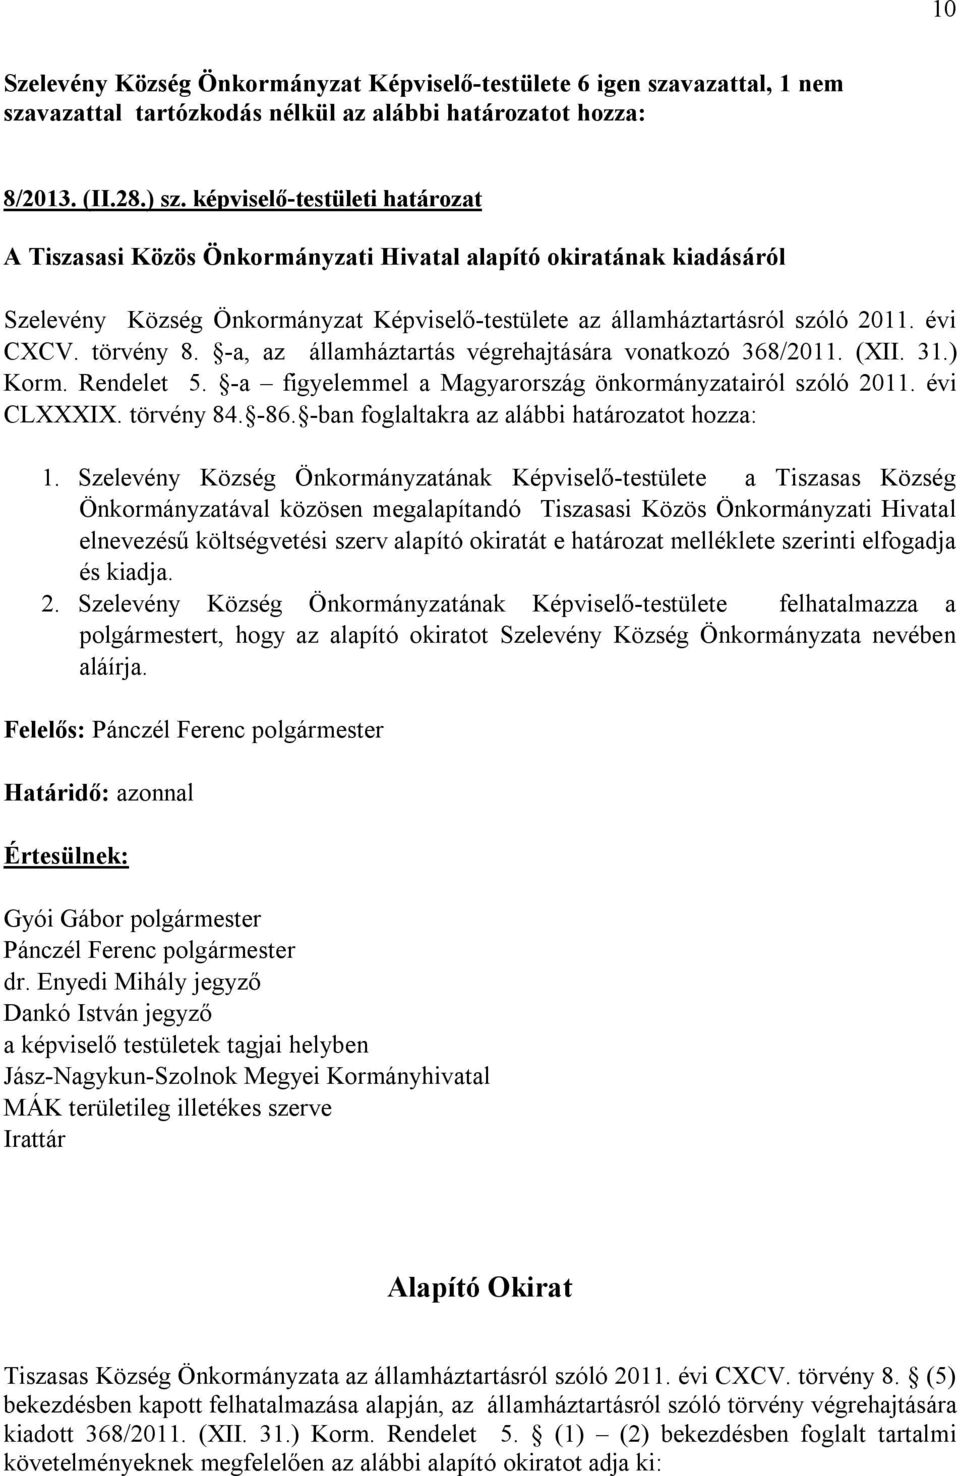 törvény 8. -a, az államháztartás végrehajtására vonatkozó 368/2011. (XII. 31.) Korm. Rendelet 5. -a figyelemmel a Magyarország önkormányzatairól szóló 2011. évi CLXXXIX. törvény 84. -86.